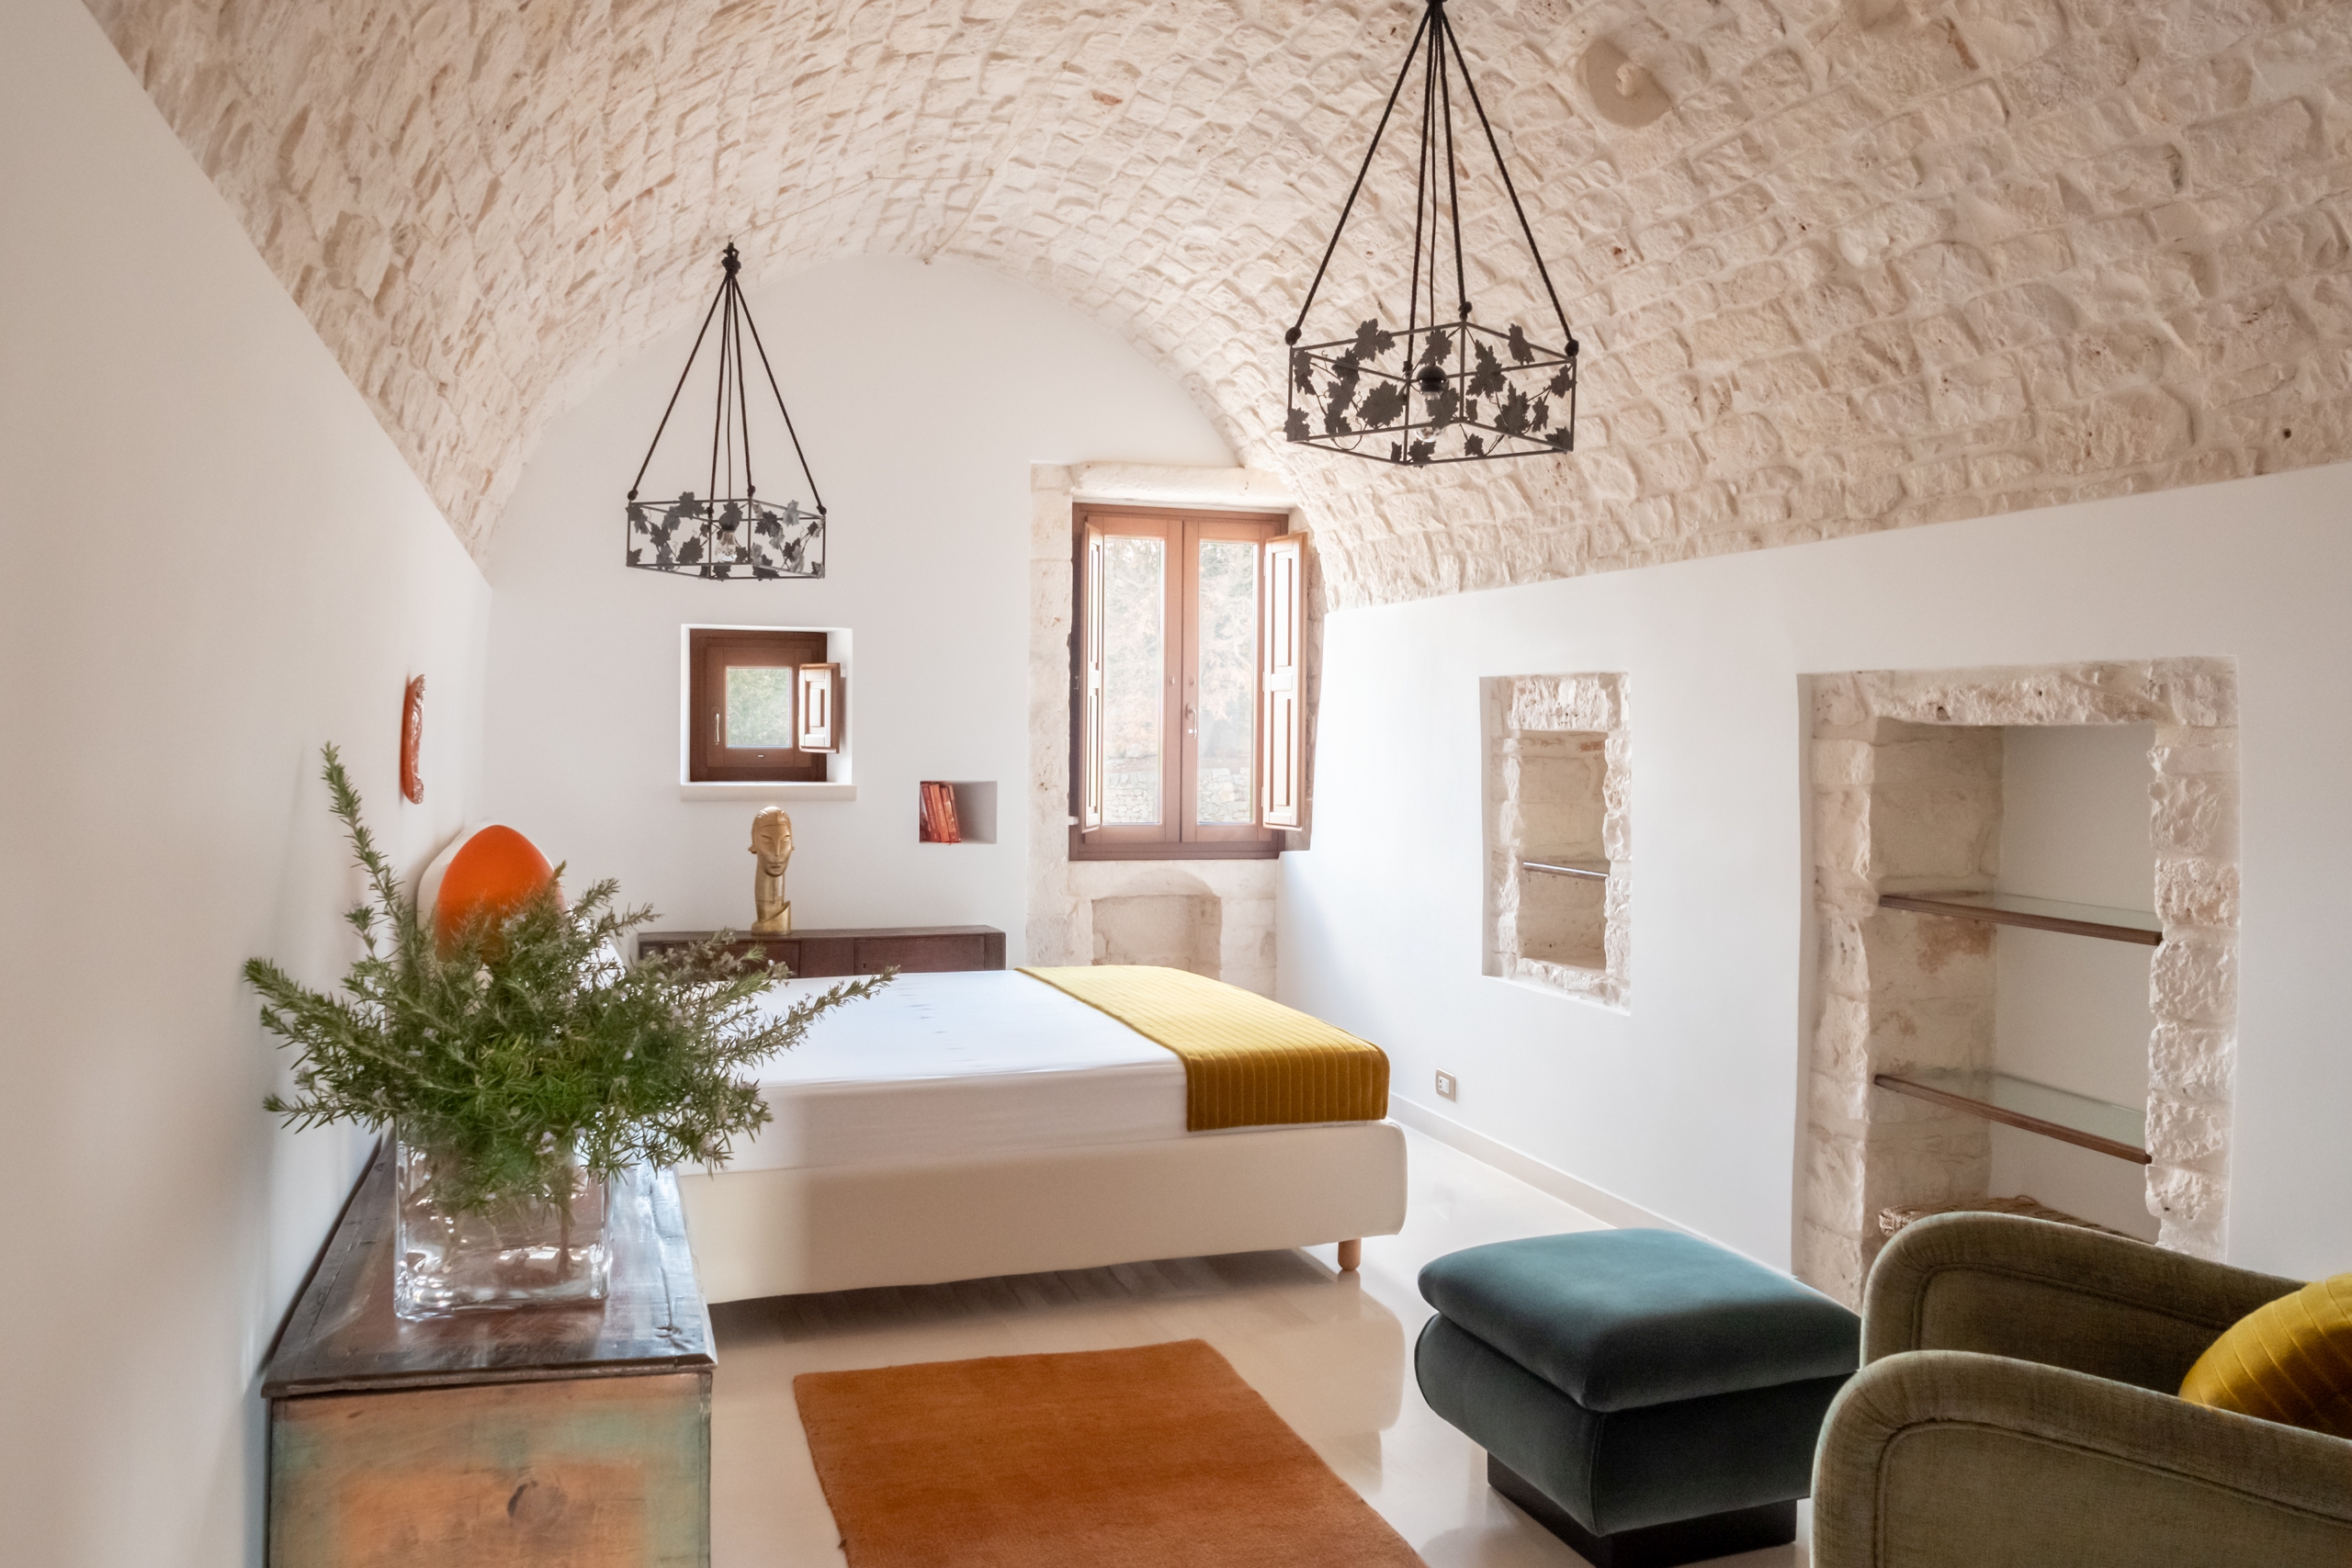 Camera matrimoniale in storica masseria di lusso restaurata in Puglia | Masseria della Croce